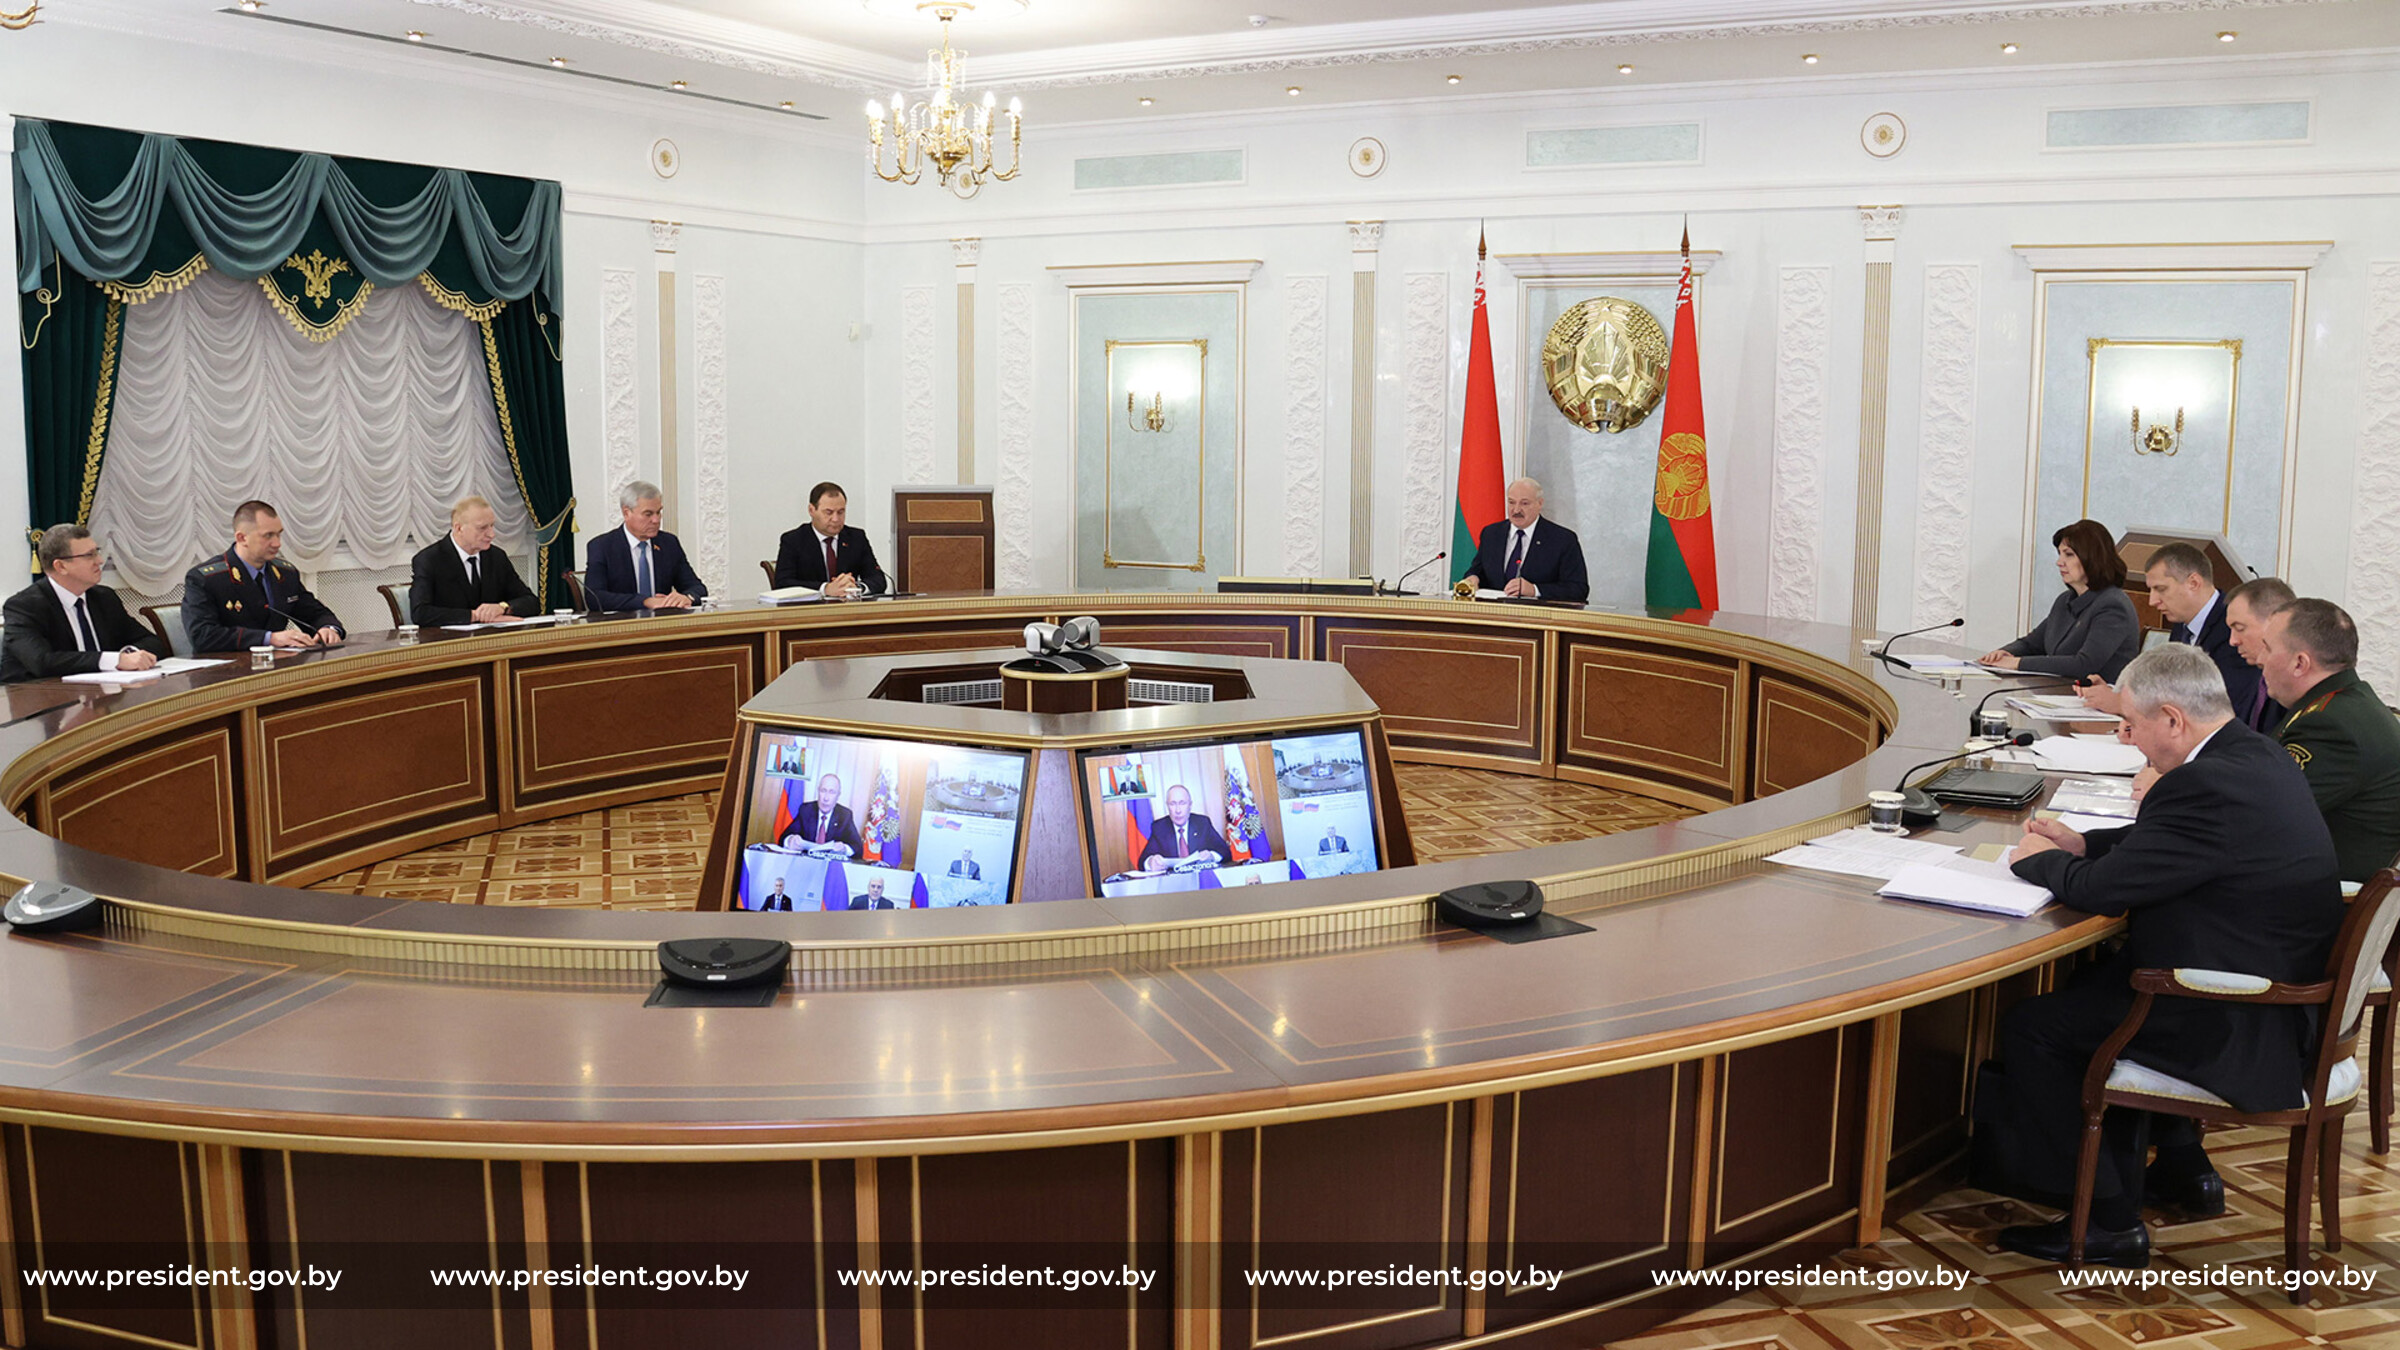 Лукашенко подписал указ о переводе госорганов. Заседание высшего Генсовета Союзного государства.